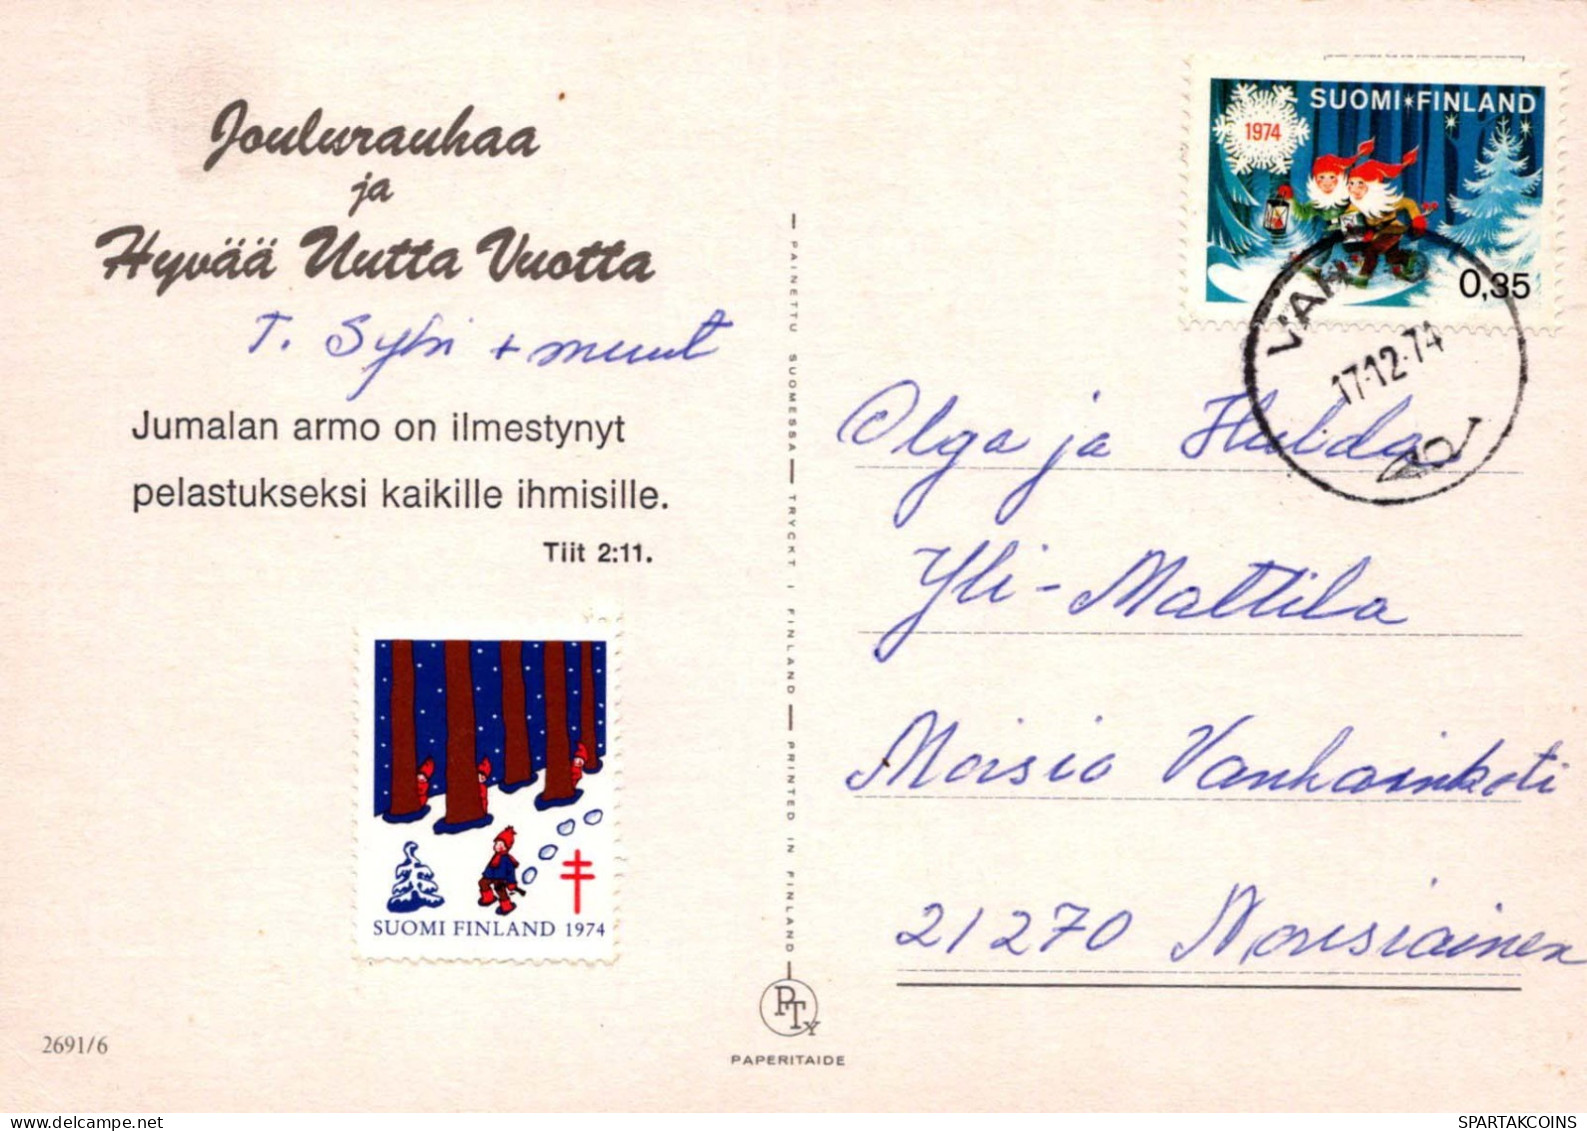 Virgen María Virgen Niño JESÚS Navidad Religión Vintage Tarjeta Postal CPSM #PBB991.ES - Jungfräuliche Marie Und Madona